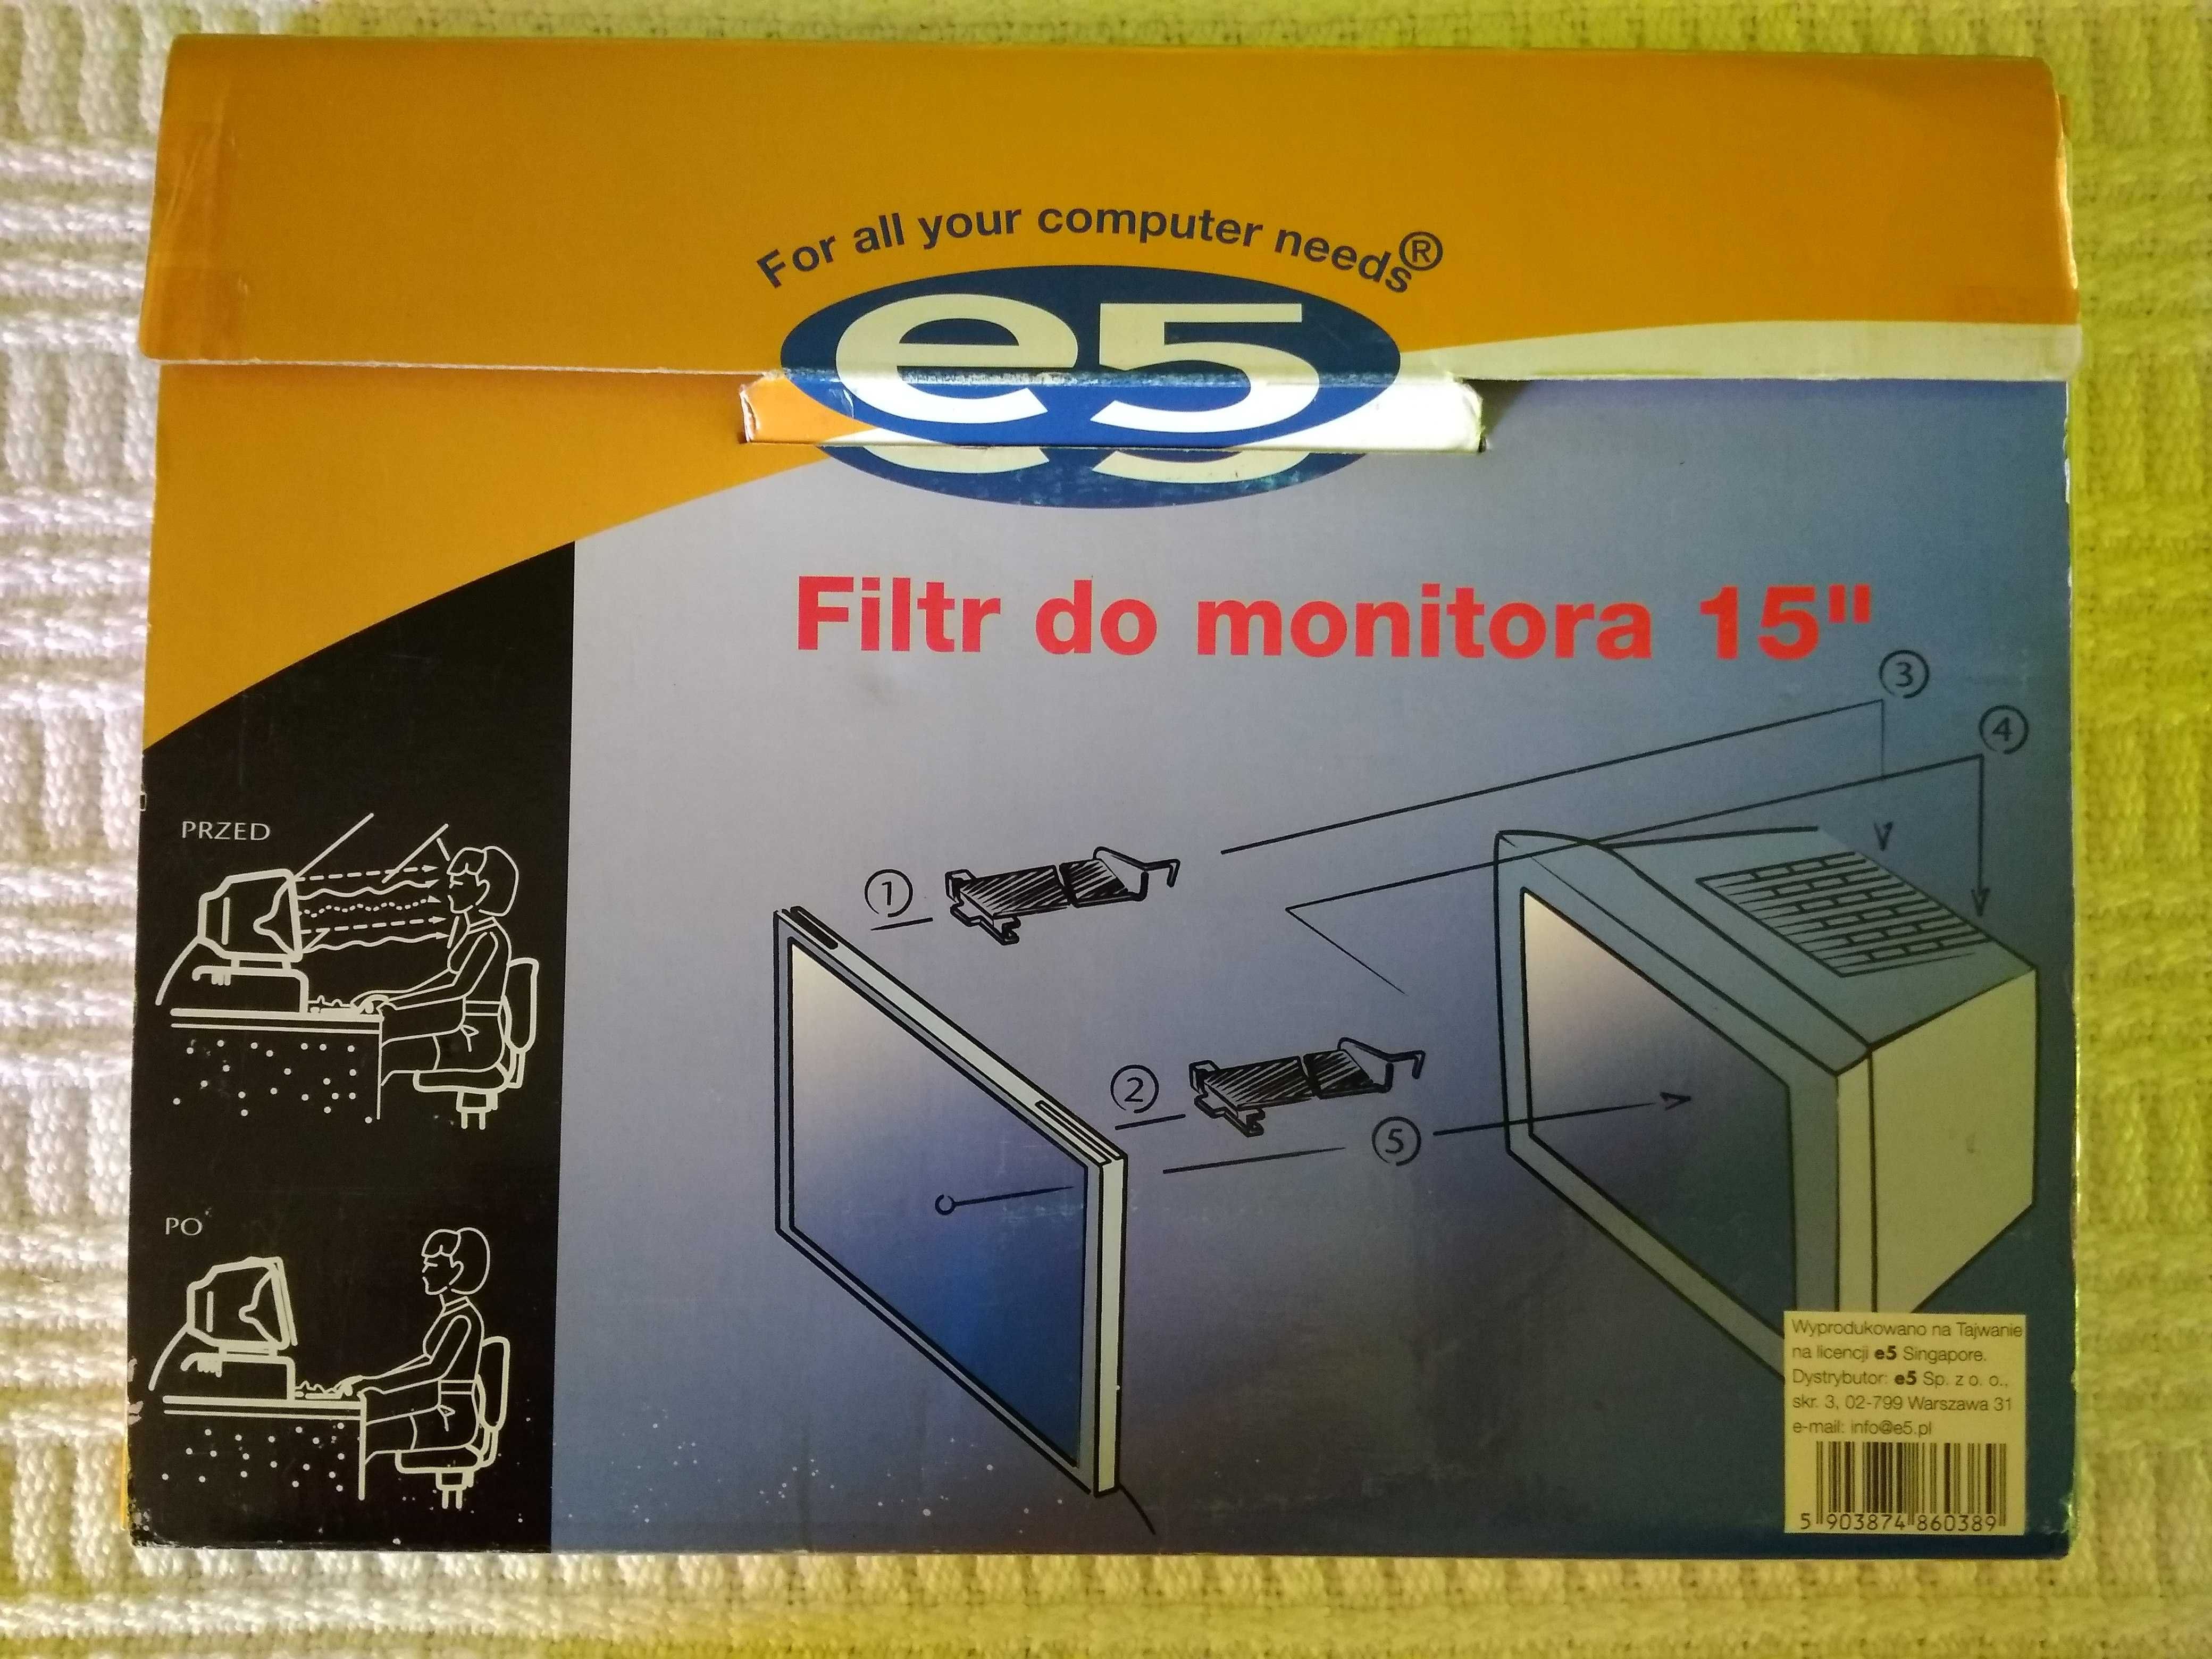 Monitor Samtron 56E, 15", Filtr do monitora 15"